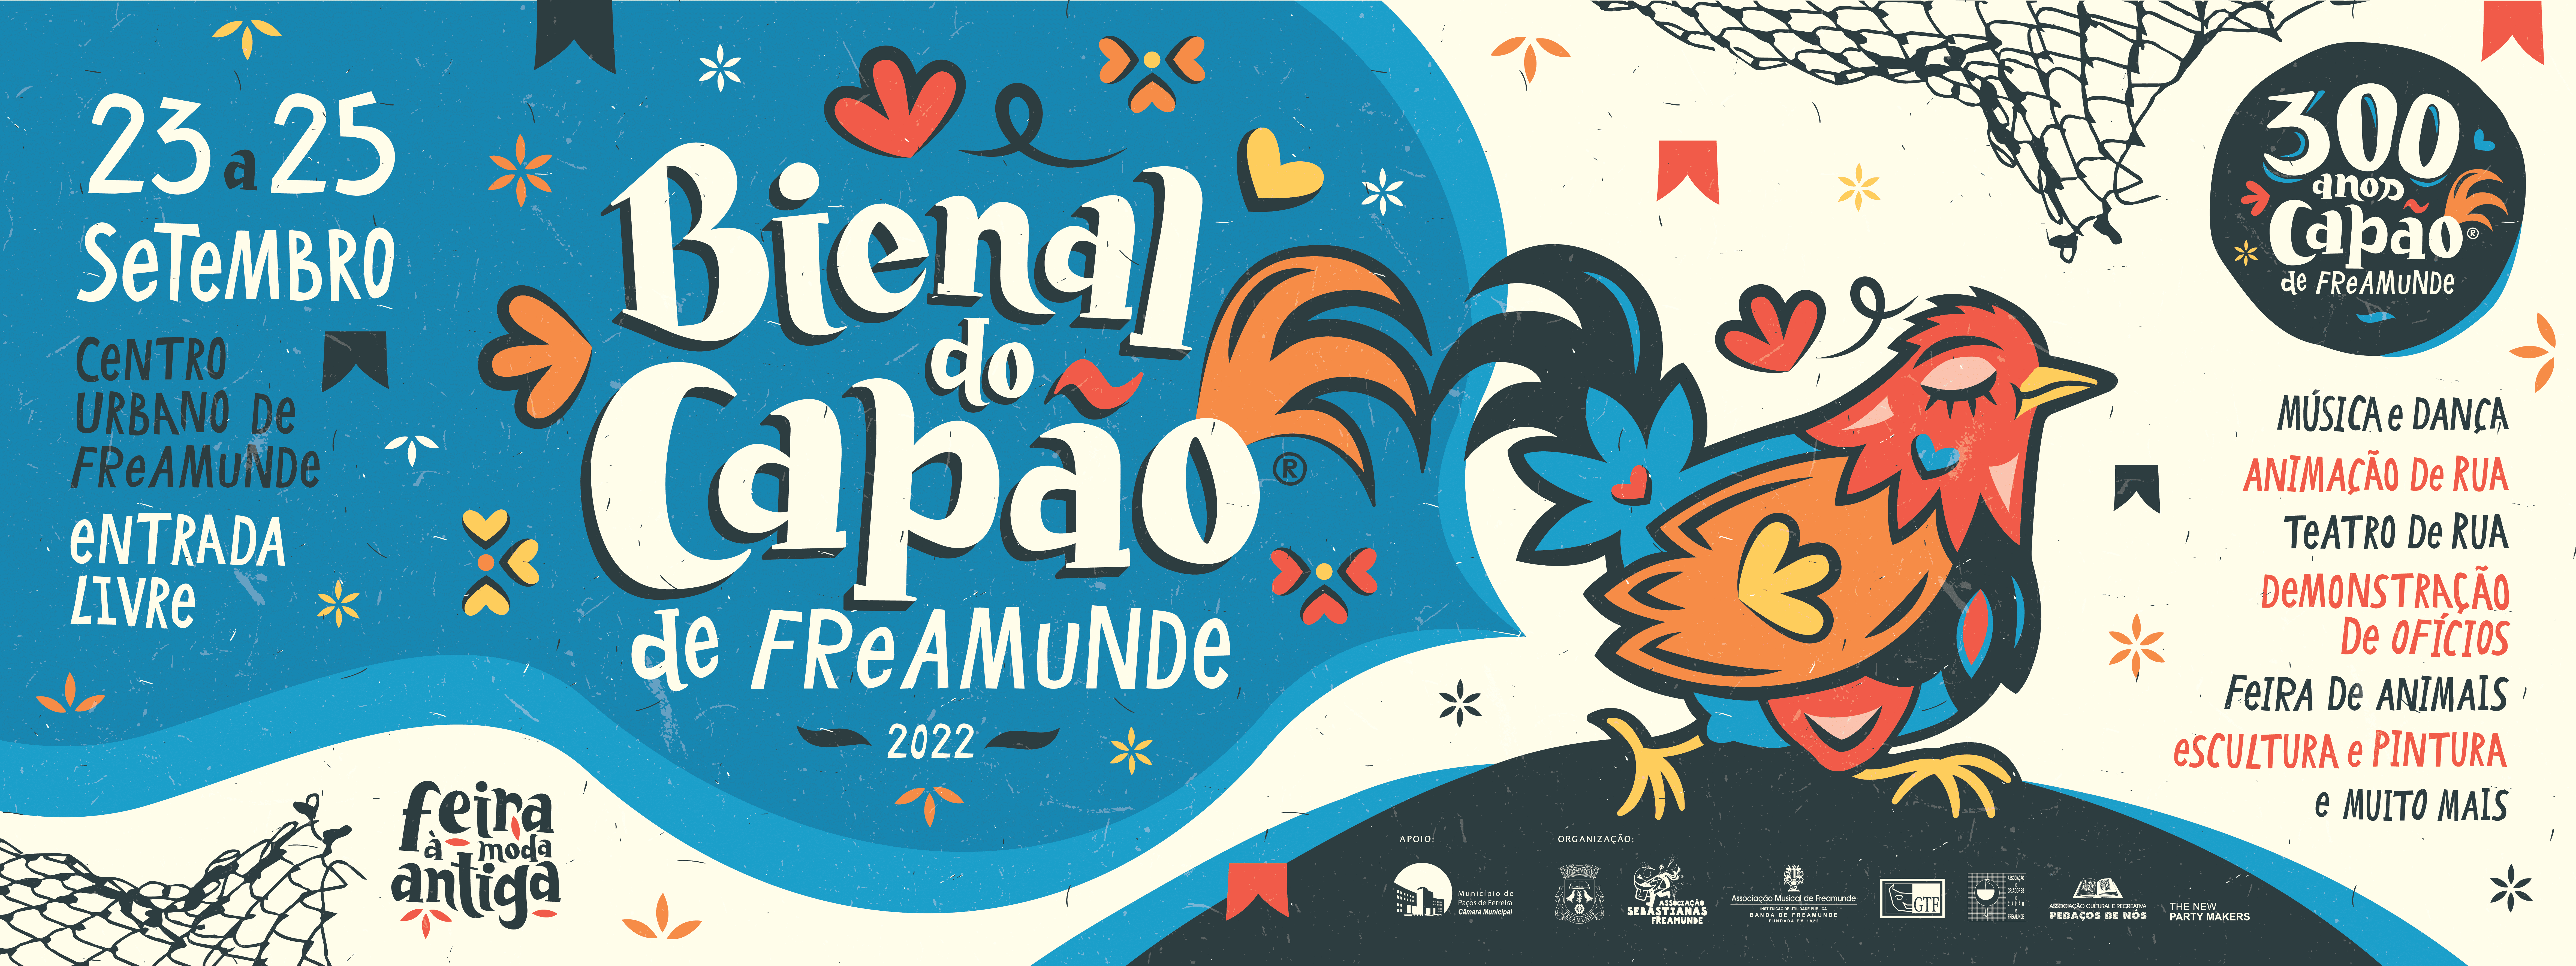 Banner Bienal do Capão de Freamunde